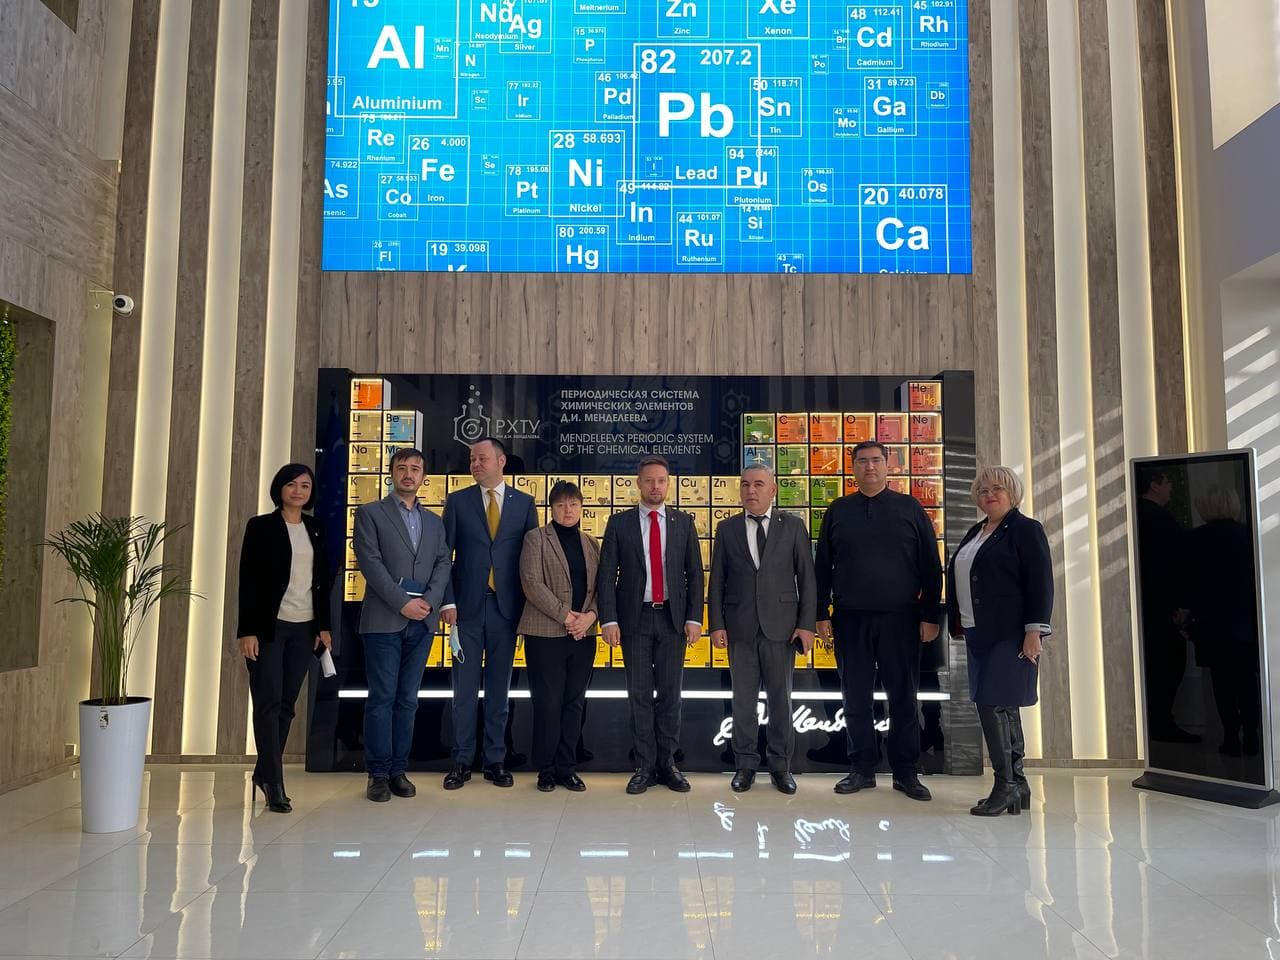 Международная химия: руководство Менделеевского университета провело серию встреч в Ташкенте для развития сотрудничества с химическим комплексом Республики Узбекистан